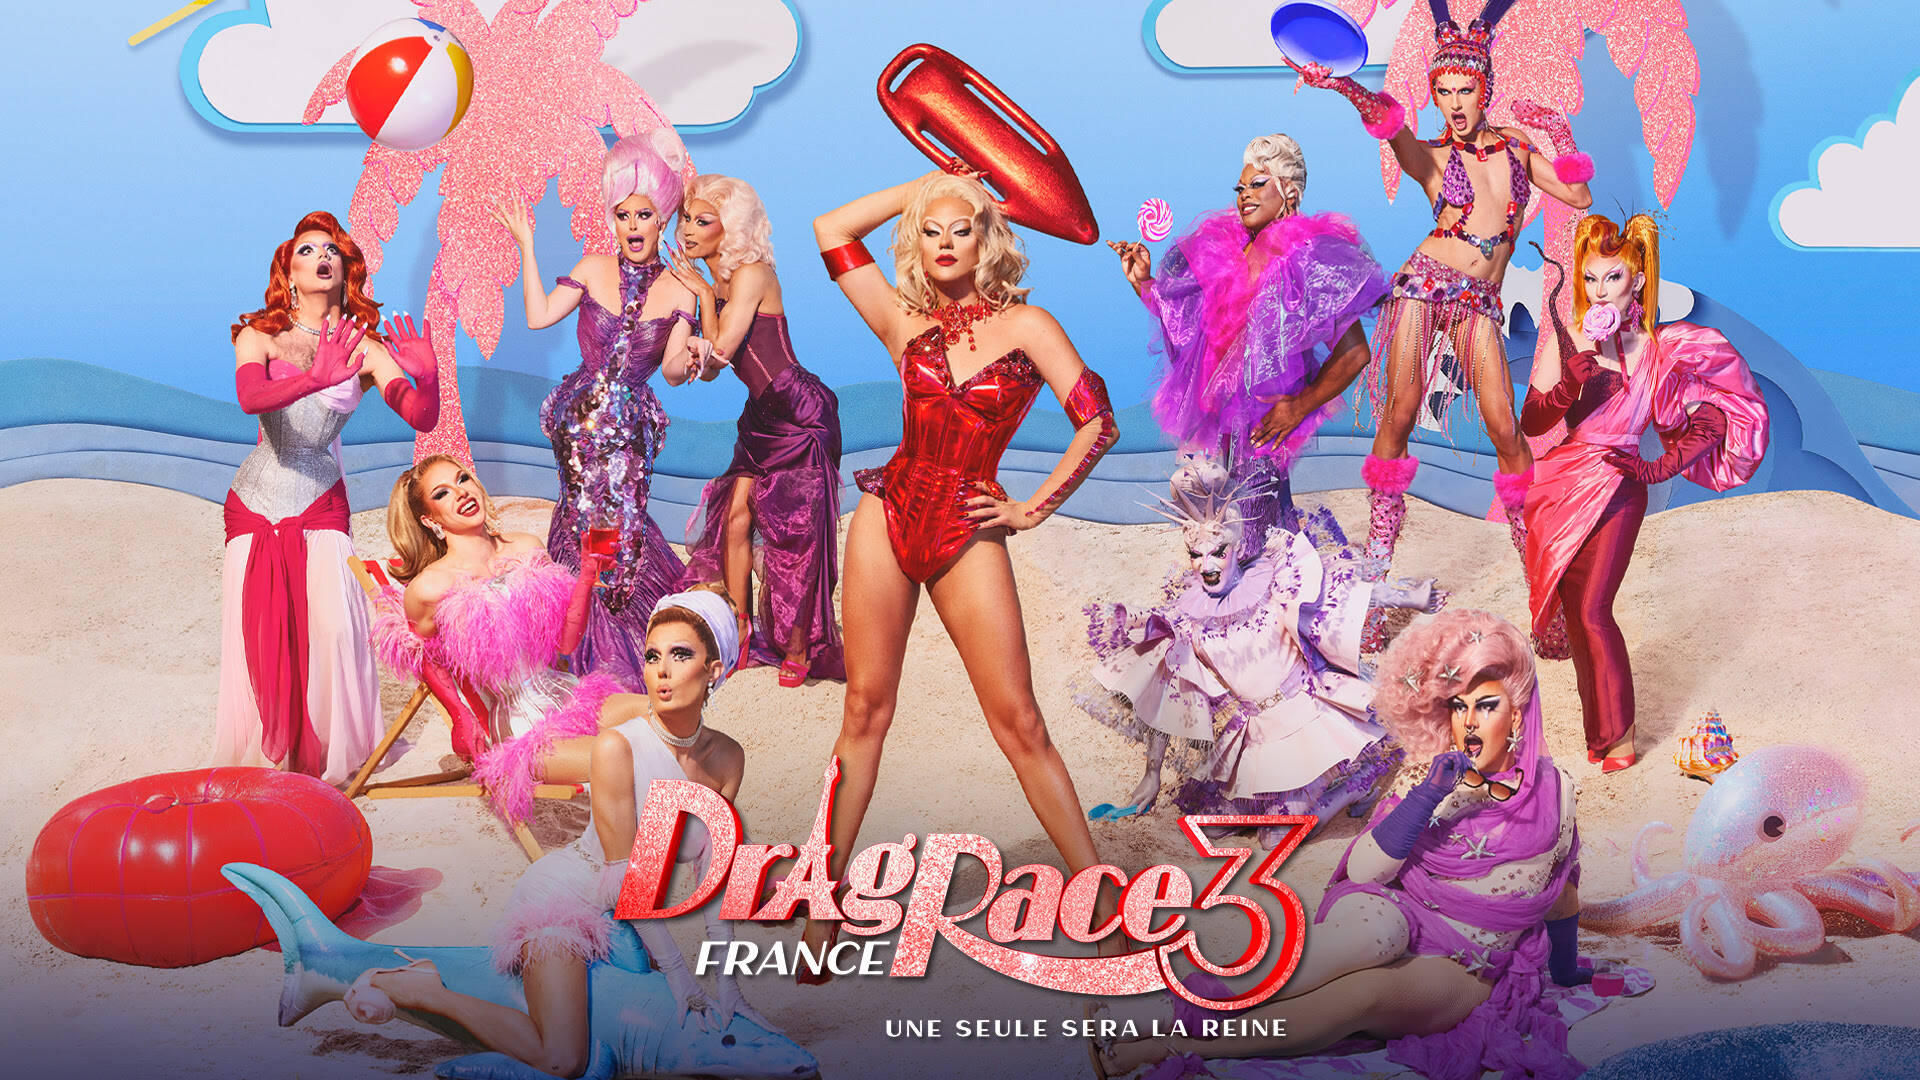 « drag race france » saison 3 arrive bientôt : le casting et les infos sur le retour de la compétition